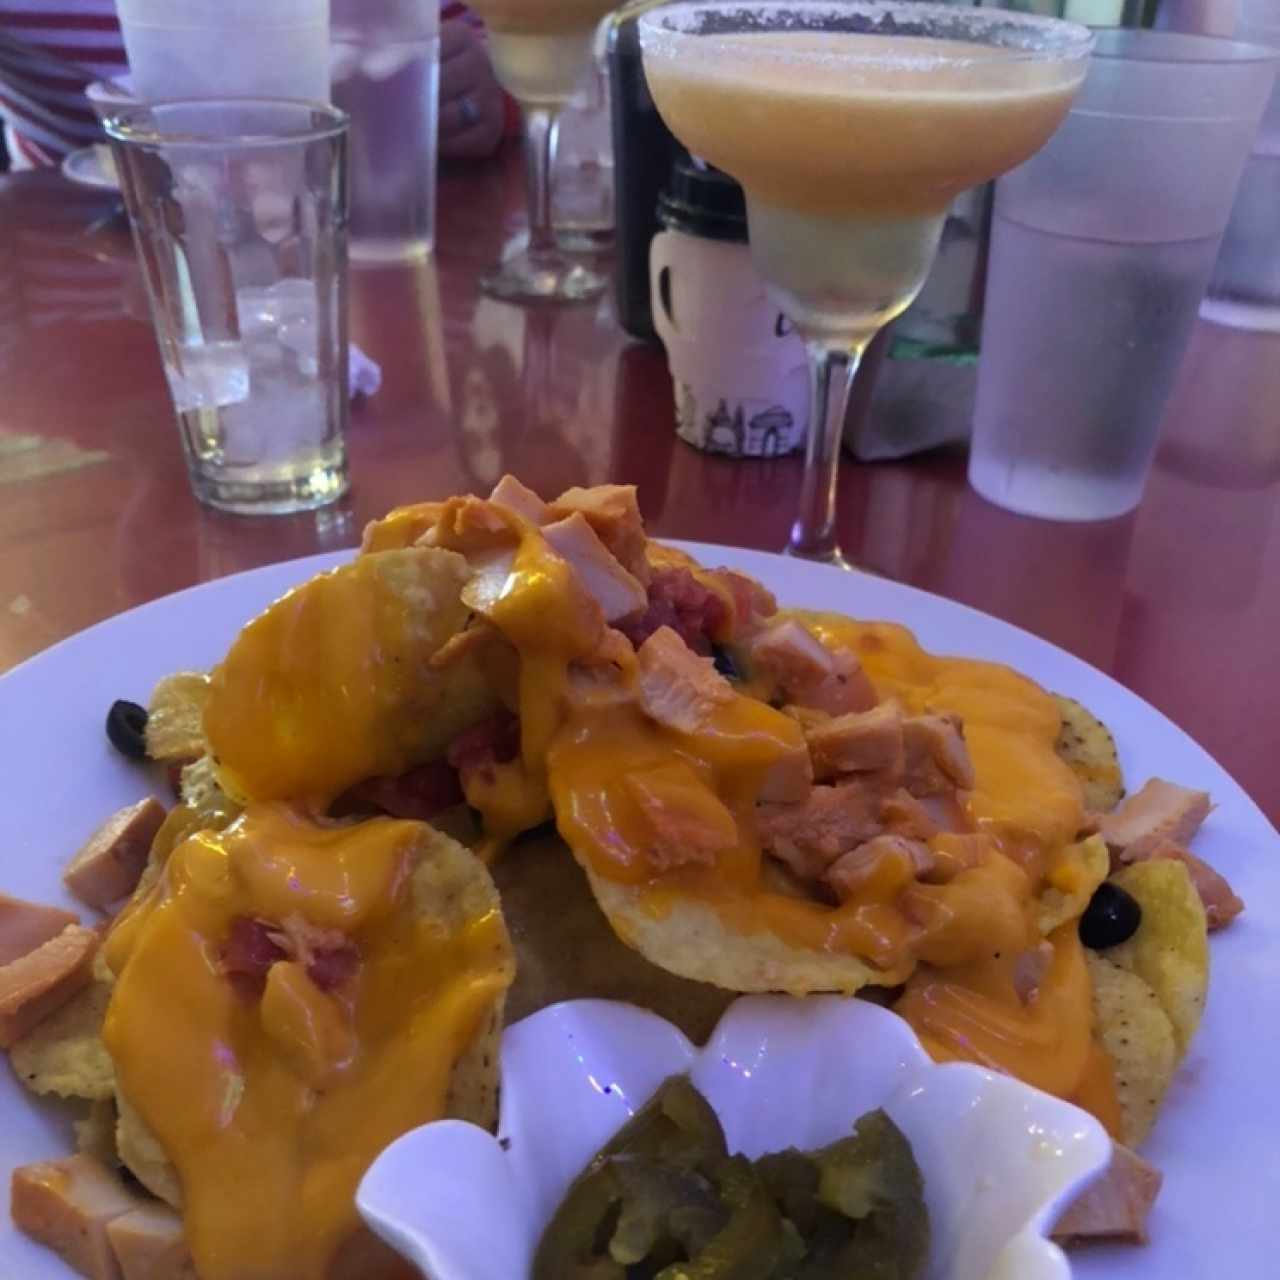 Nachos con pollo y margarita de maracuya